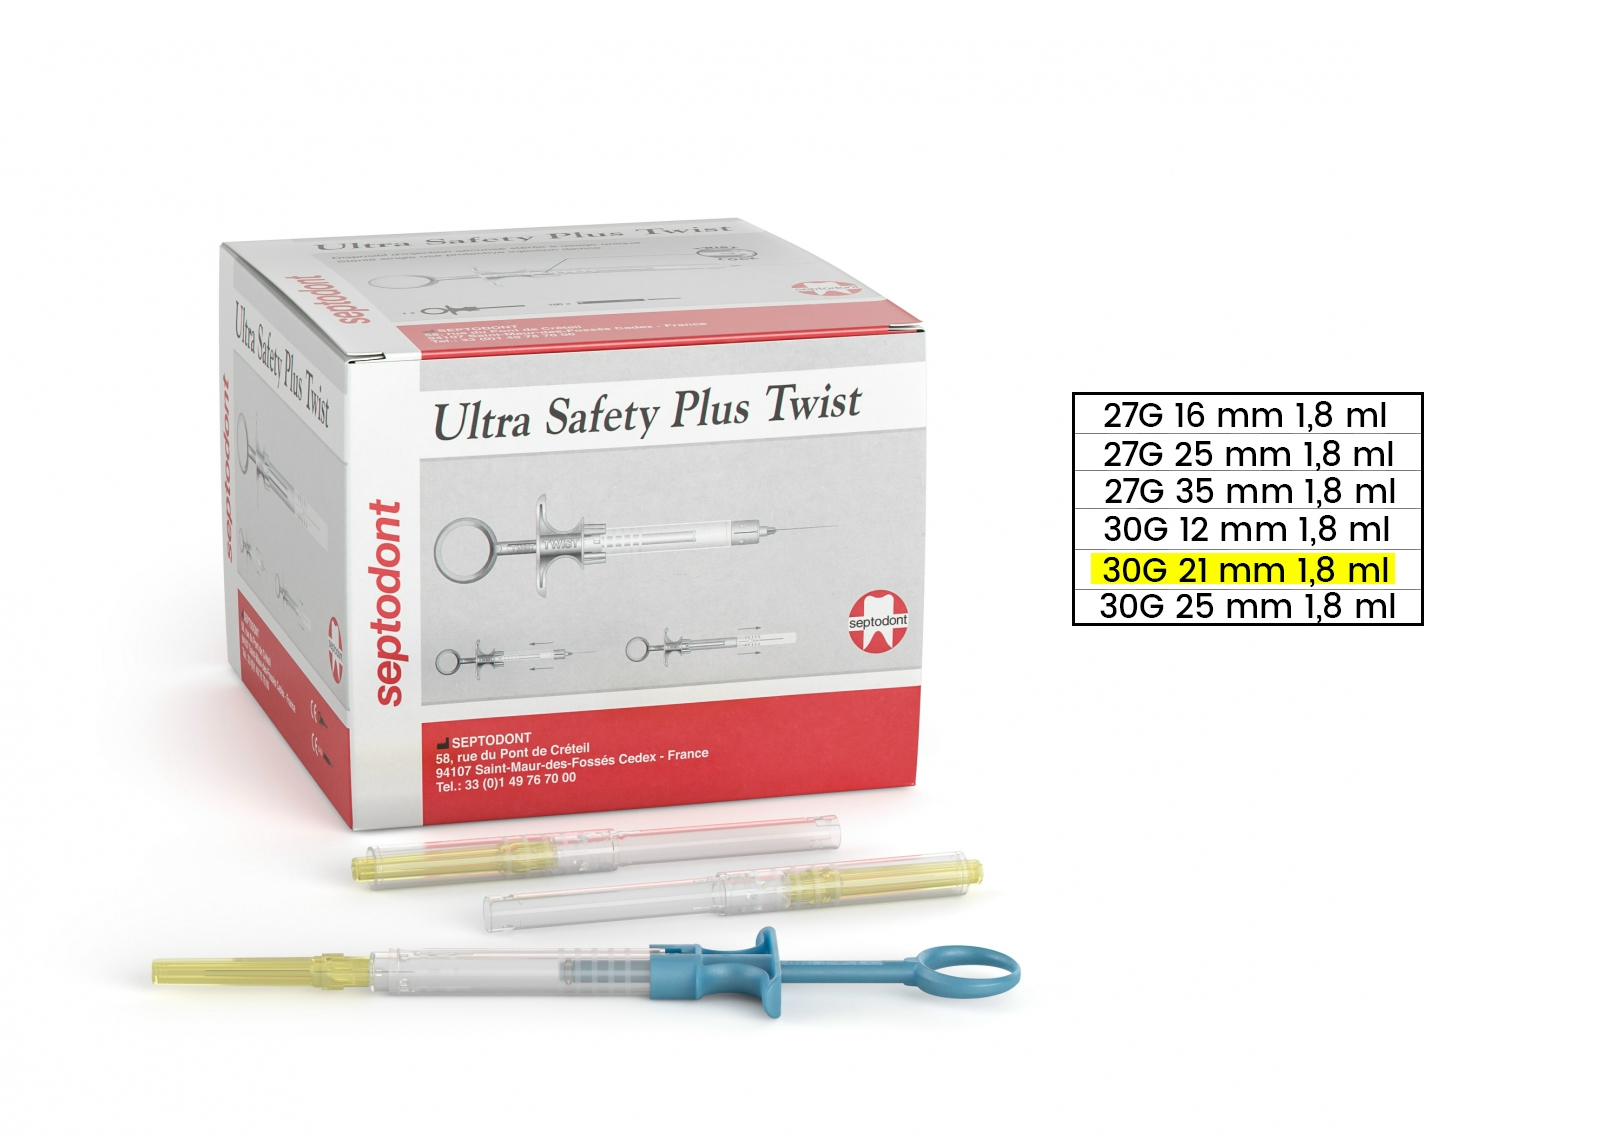 Ultra Safety Plus TWIST 30G 21 mm 1,8 ml  (100 db steril tű + 1 sterilizálható fecskendő)